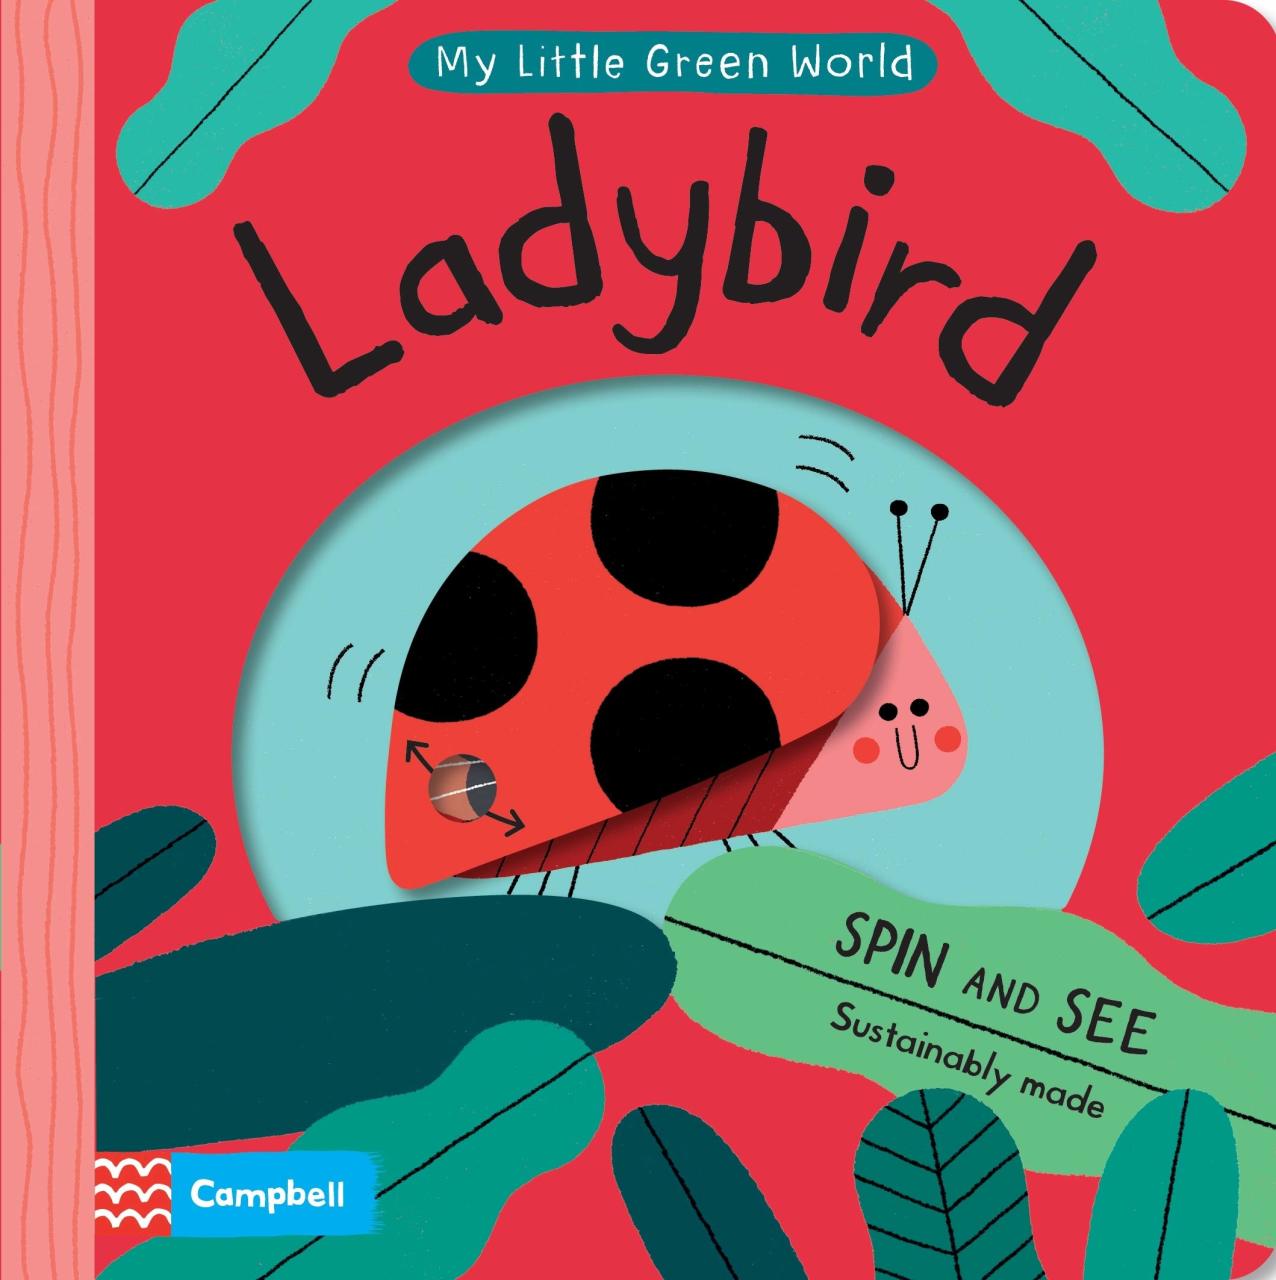 My Little Green World - Ladybird